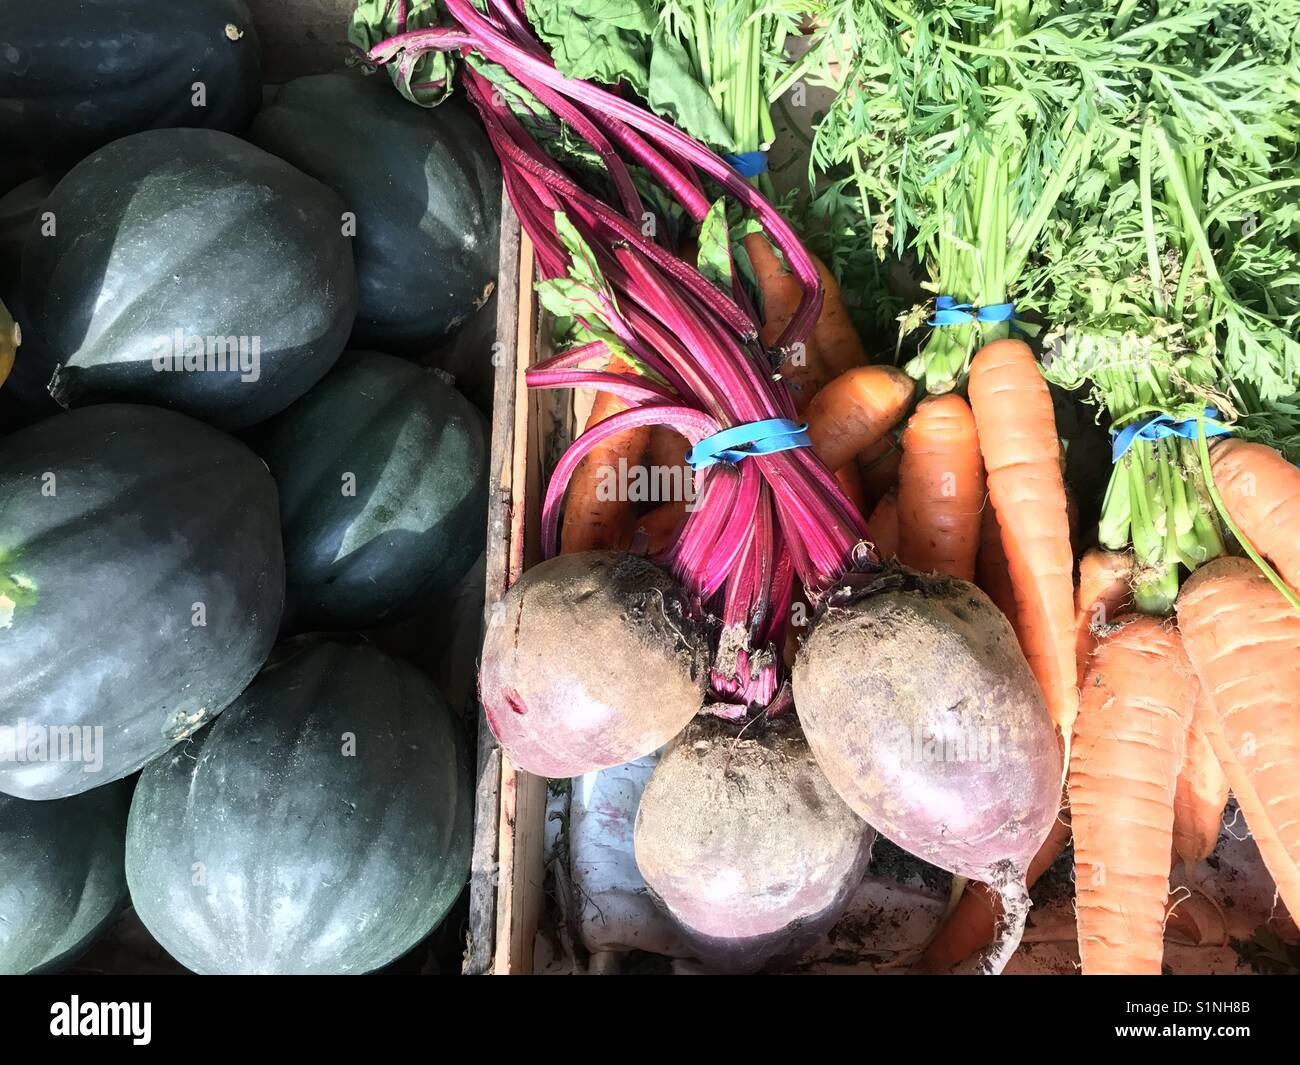 Karotten, Rüben und Acorn Squash Stockfoto